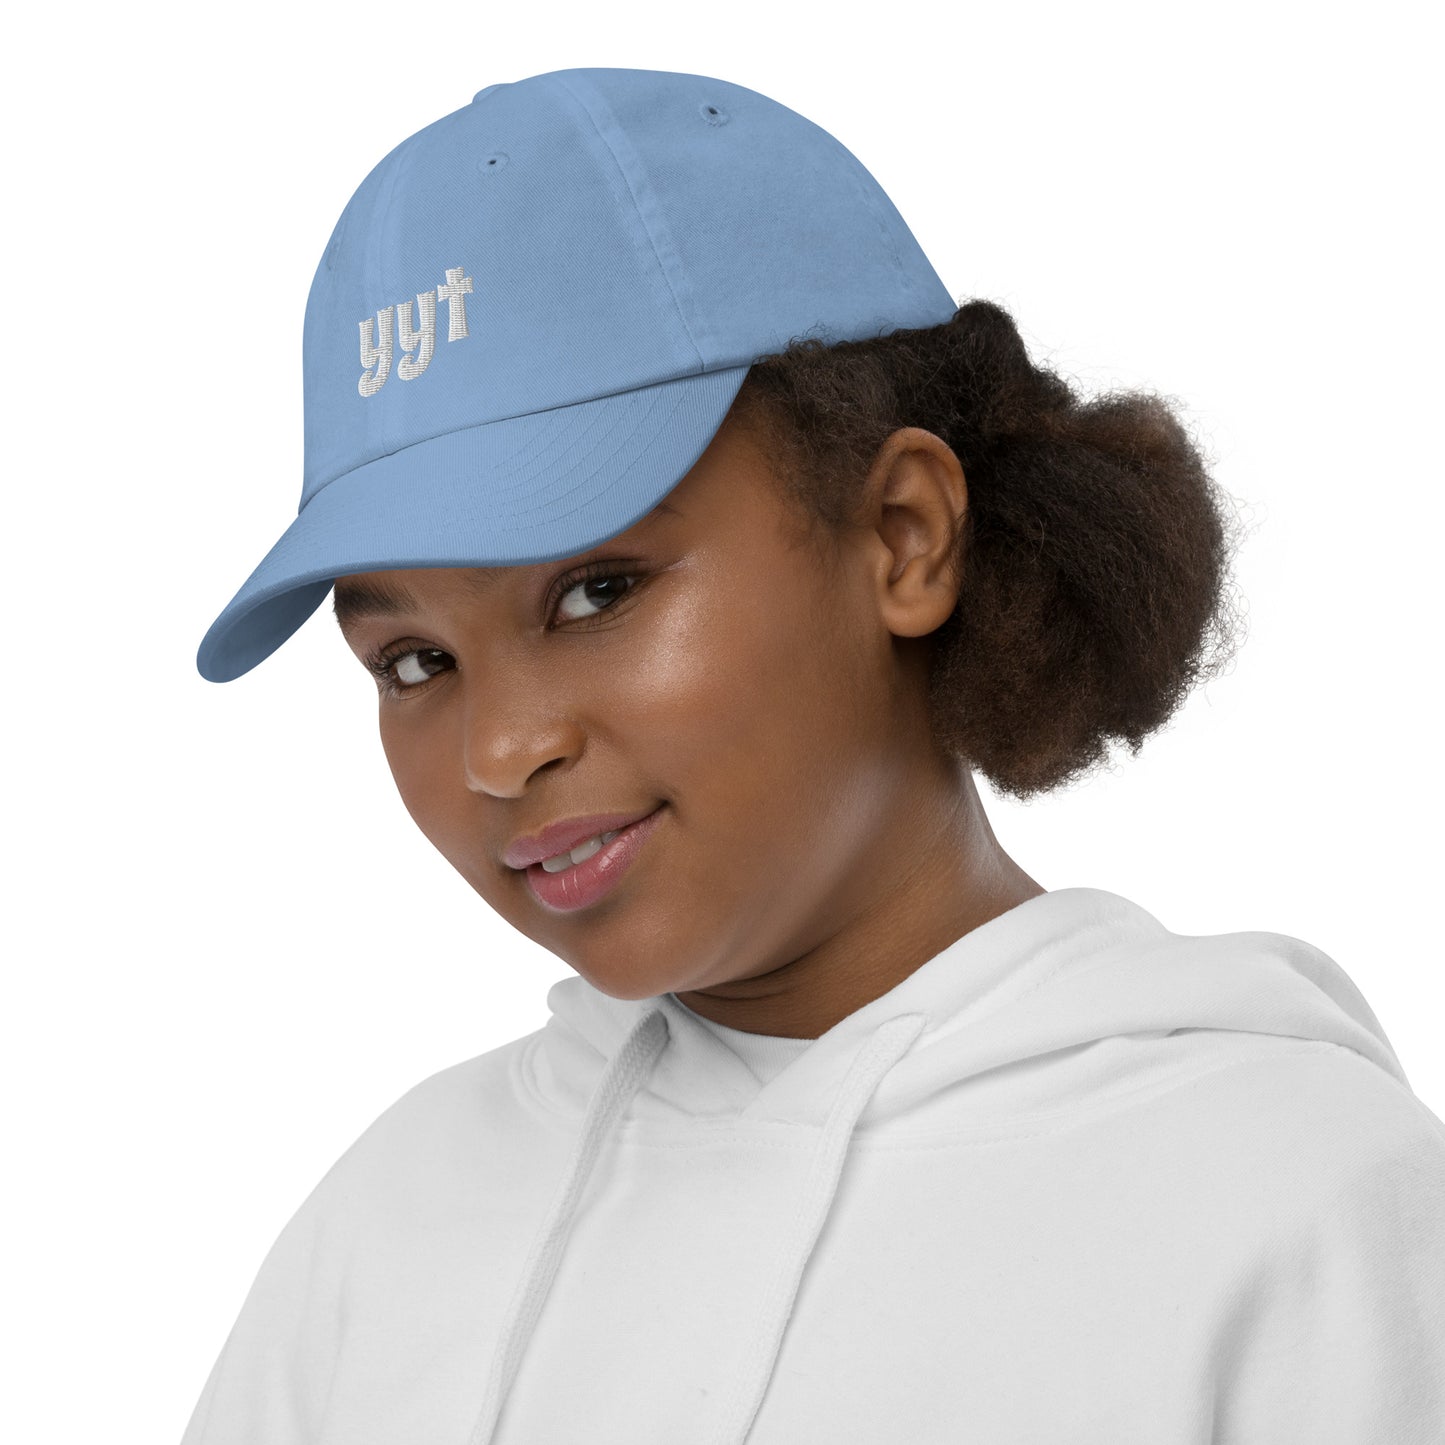 Groovy Kid's Baseball Cap - White • YYT St. John's • YHM Designs - Image 09